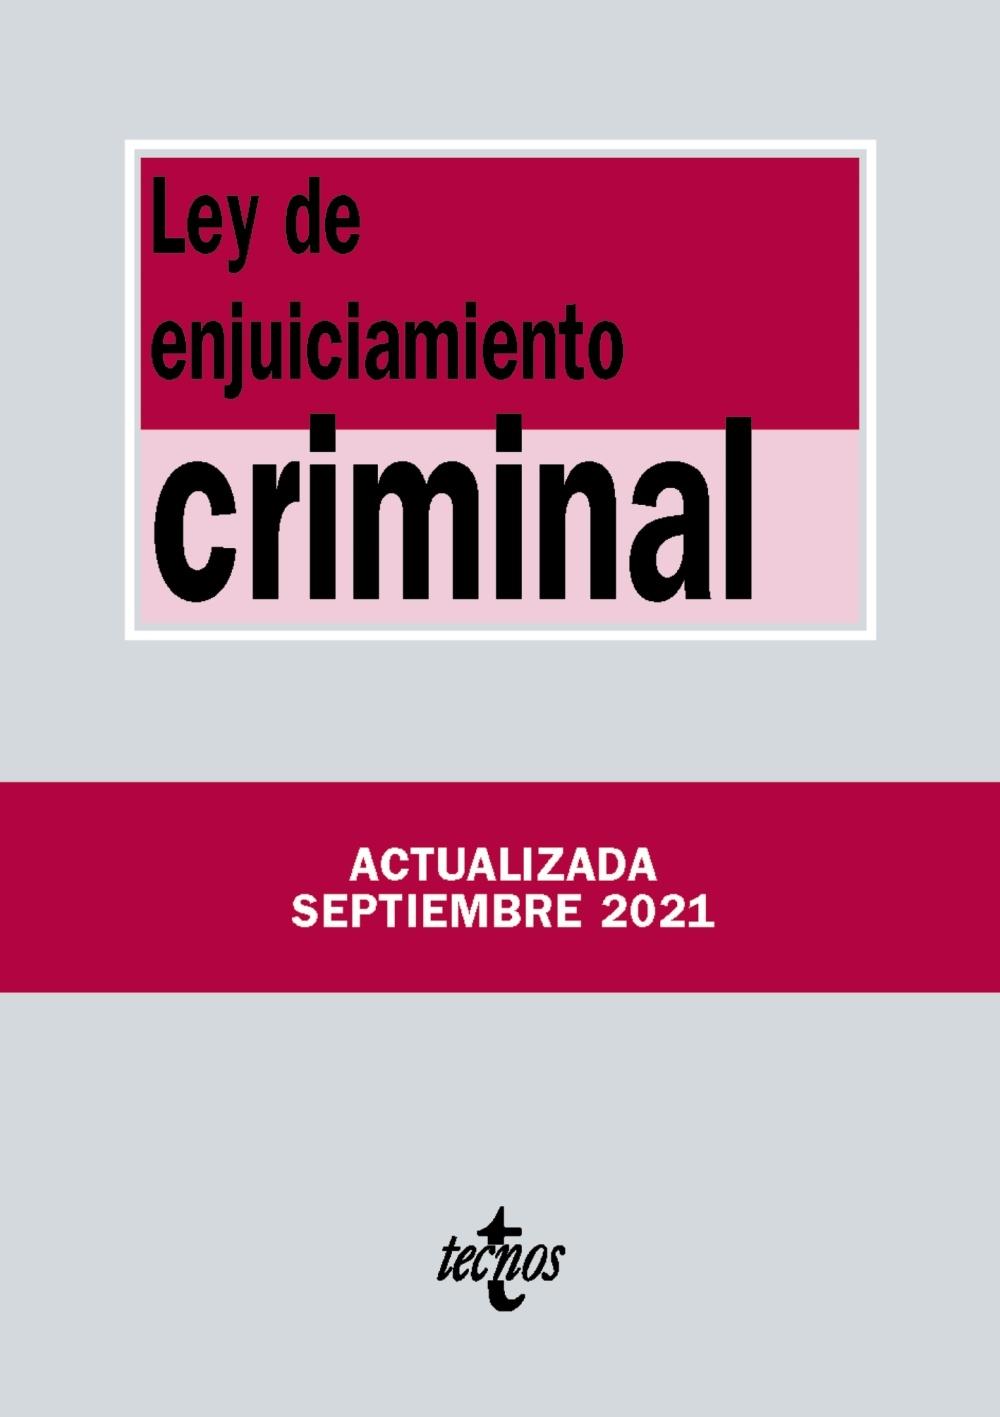 LEY DEL ENJUICIAMIENTO CRIMINAL